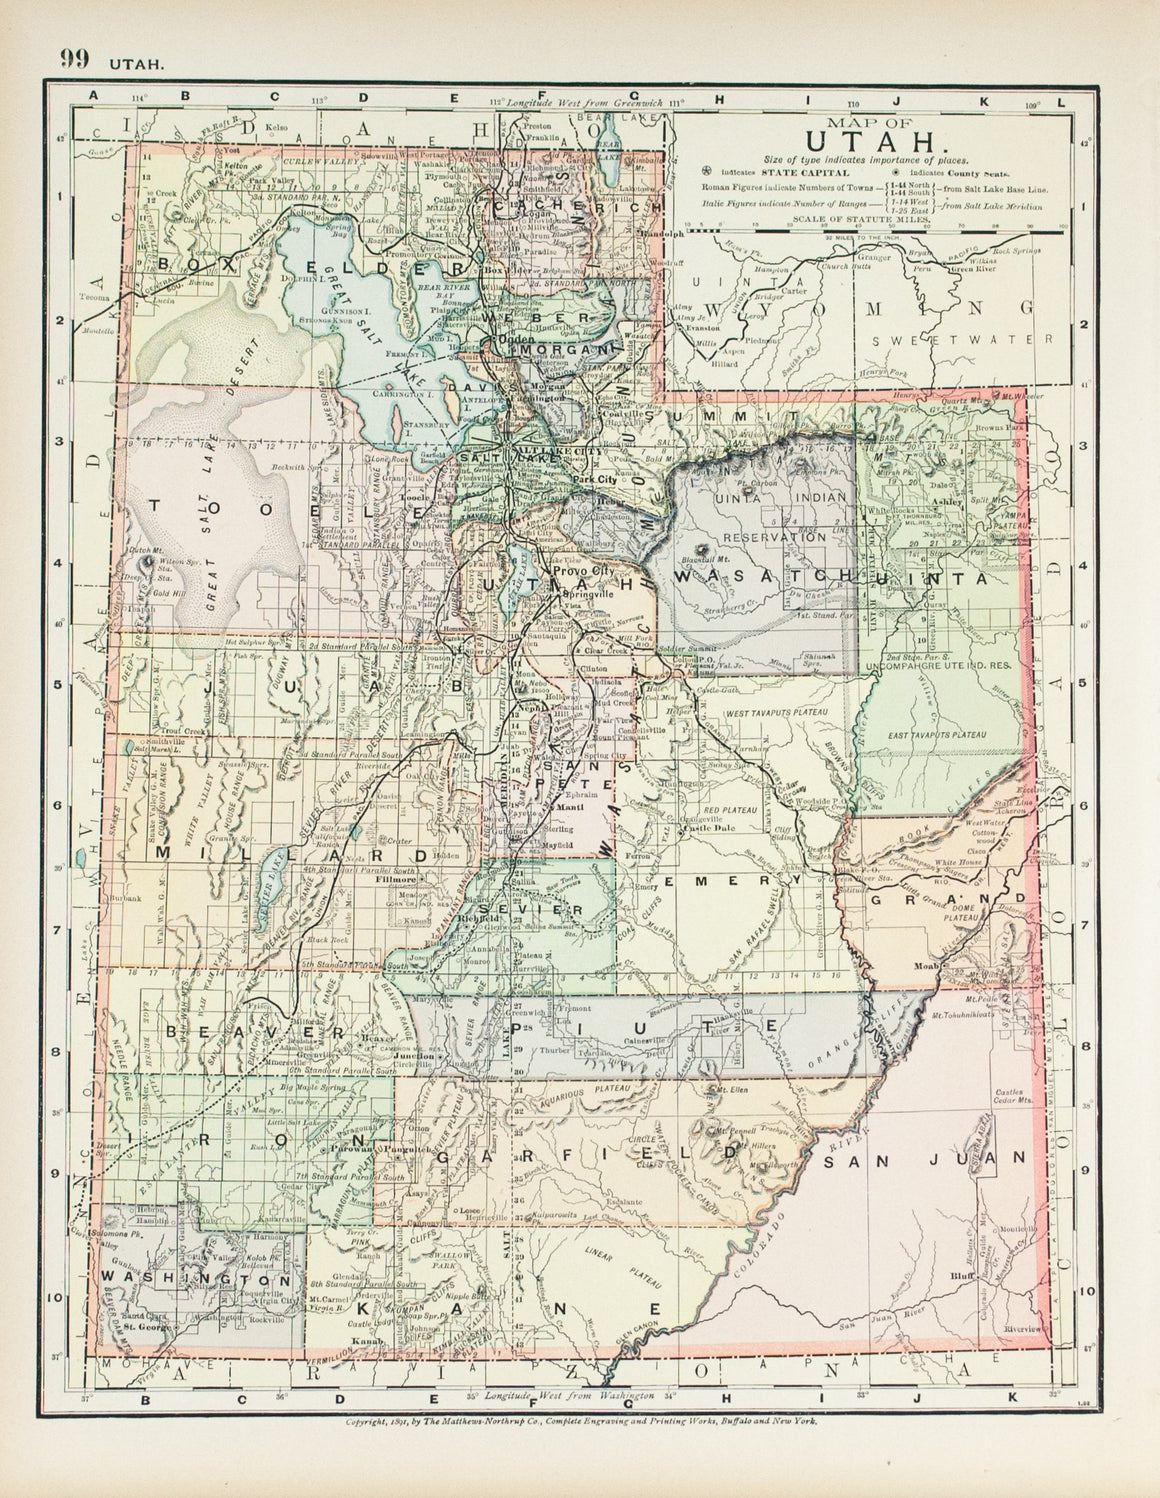 1891 Map of Utah